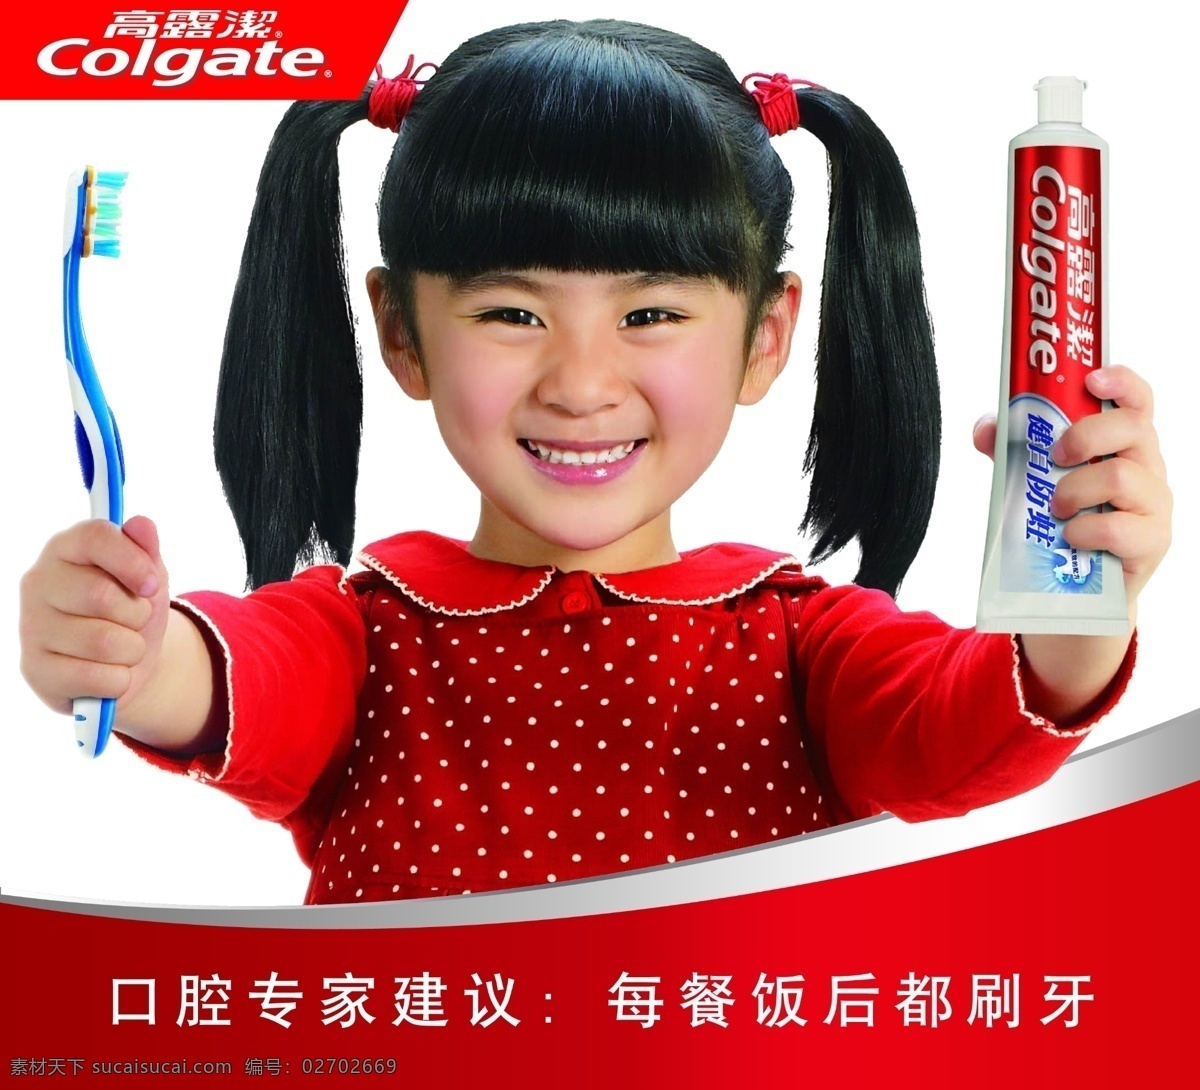 高露洁 广告 小孩 牙膏海报 高露洁展板 其他海报设计